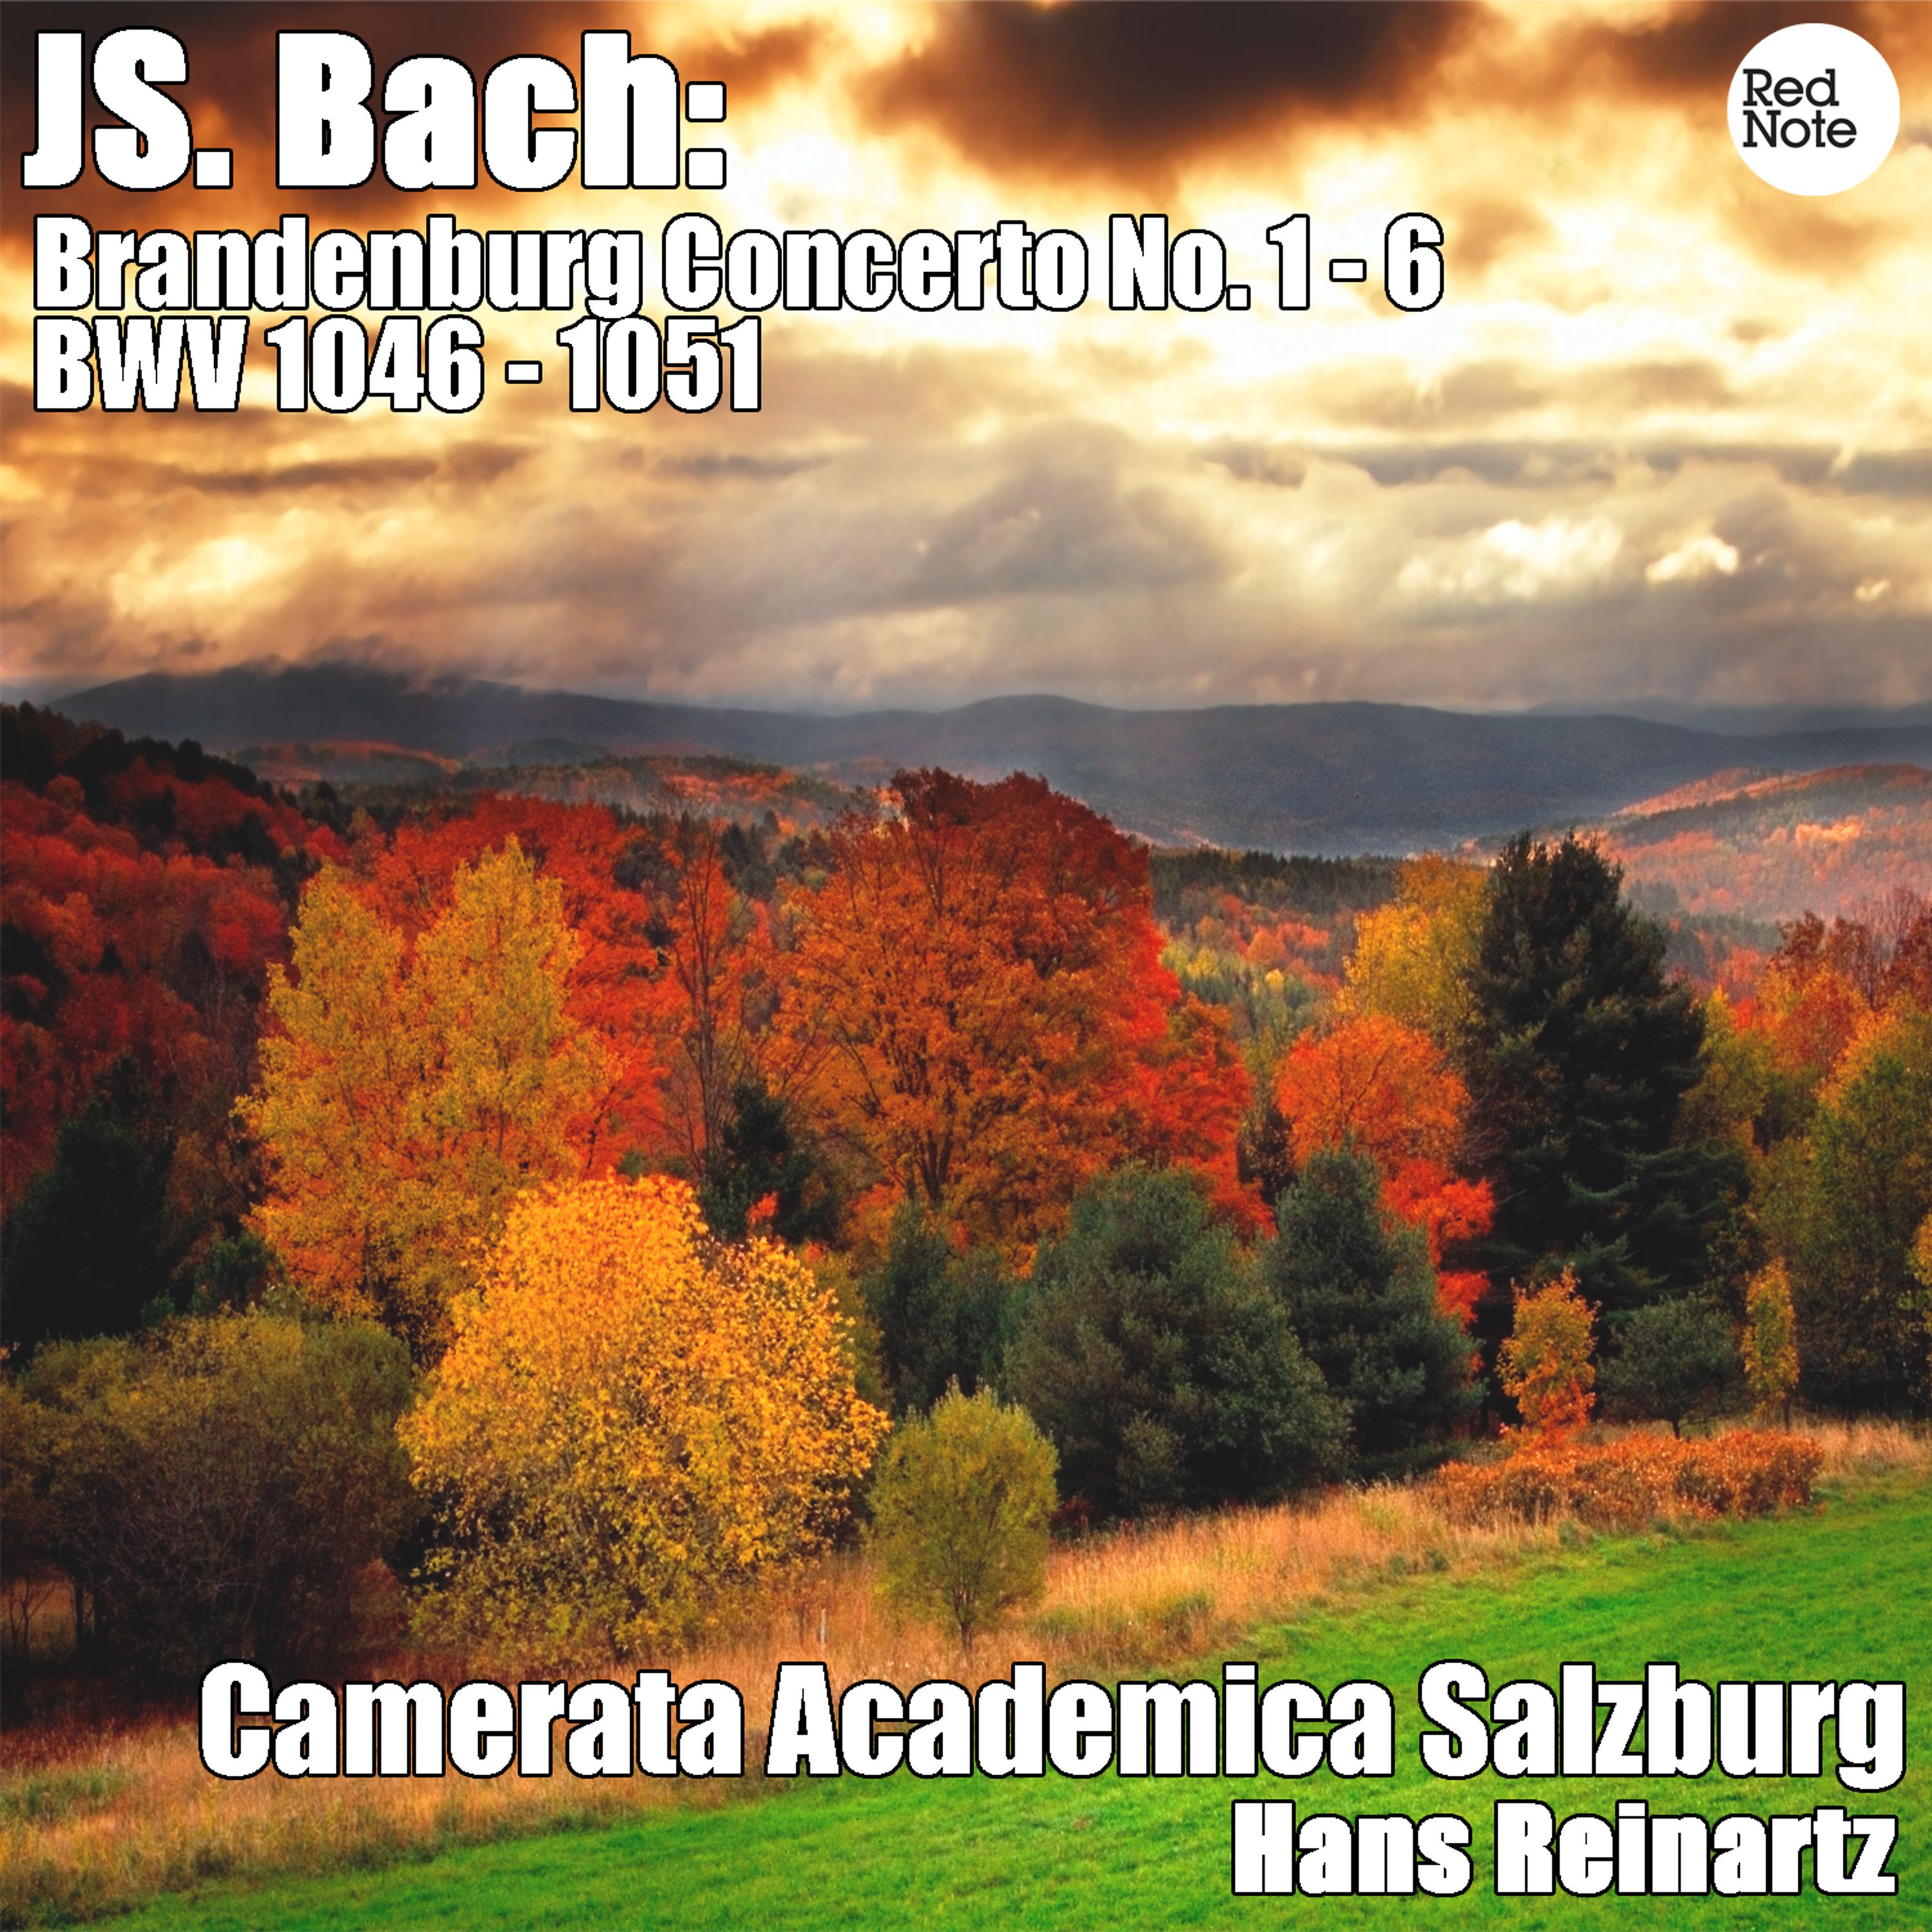 Постер альбома Bach: Brandenburg Concerto No. 1 - 6 BWV 1046 - 1051